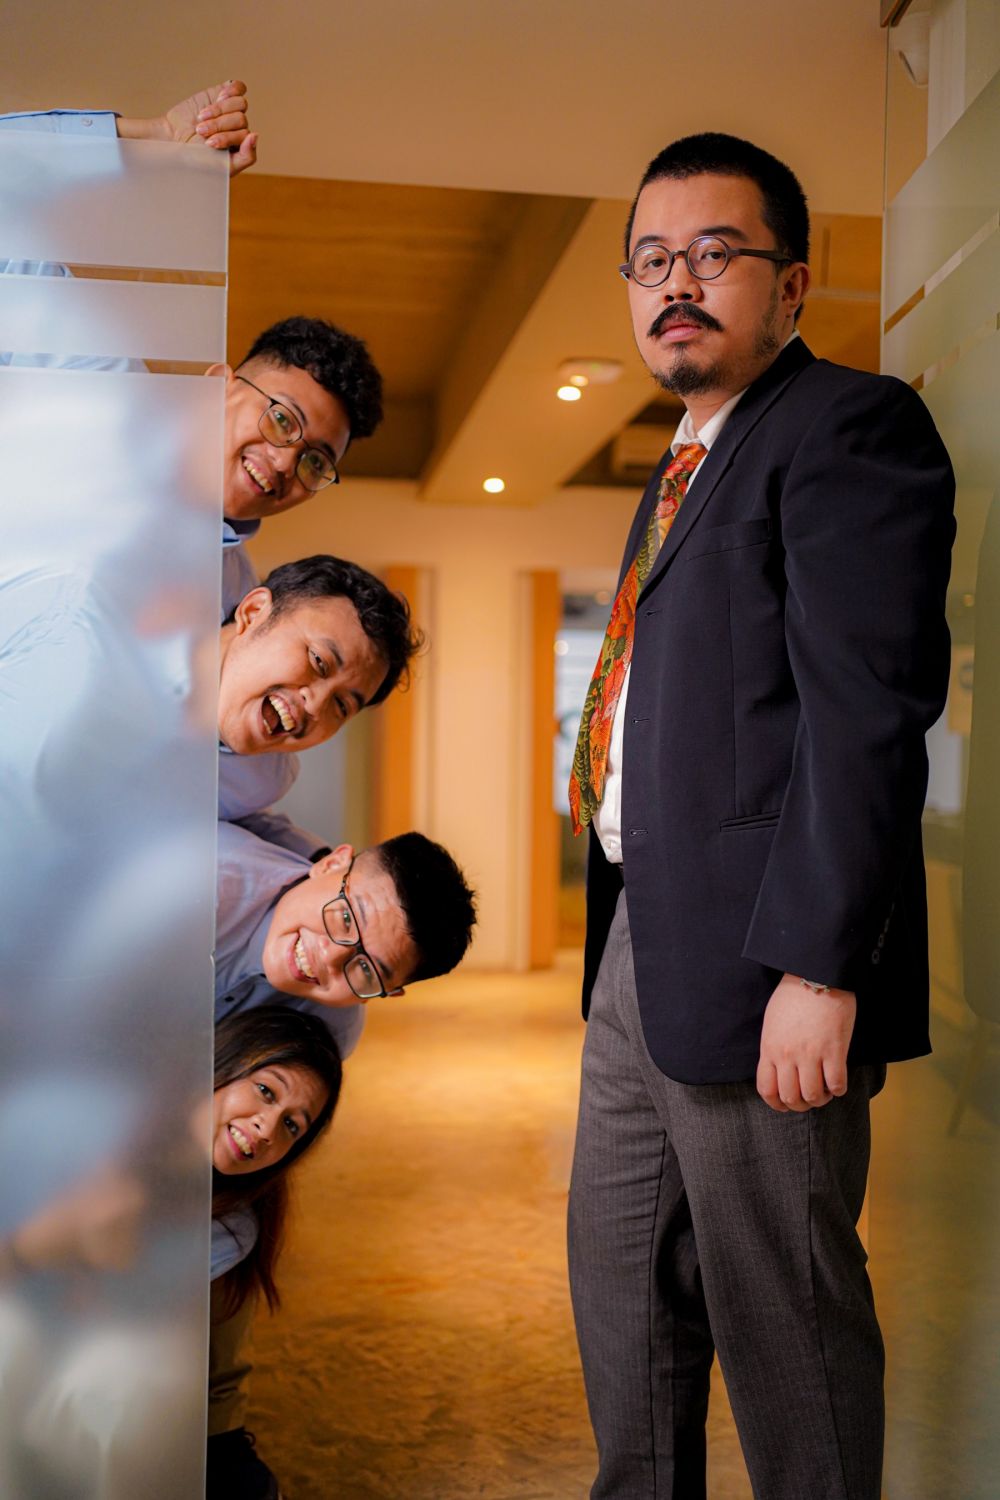 Indomusik Team suarakan isi hati karyawan lewat single Naik Gaji Boss